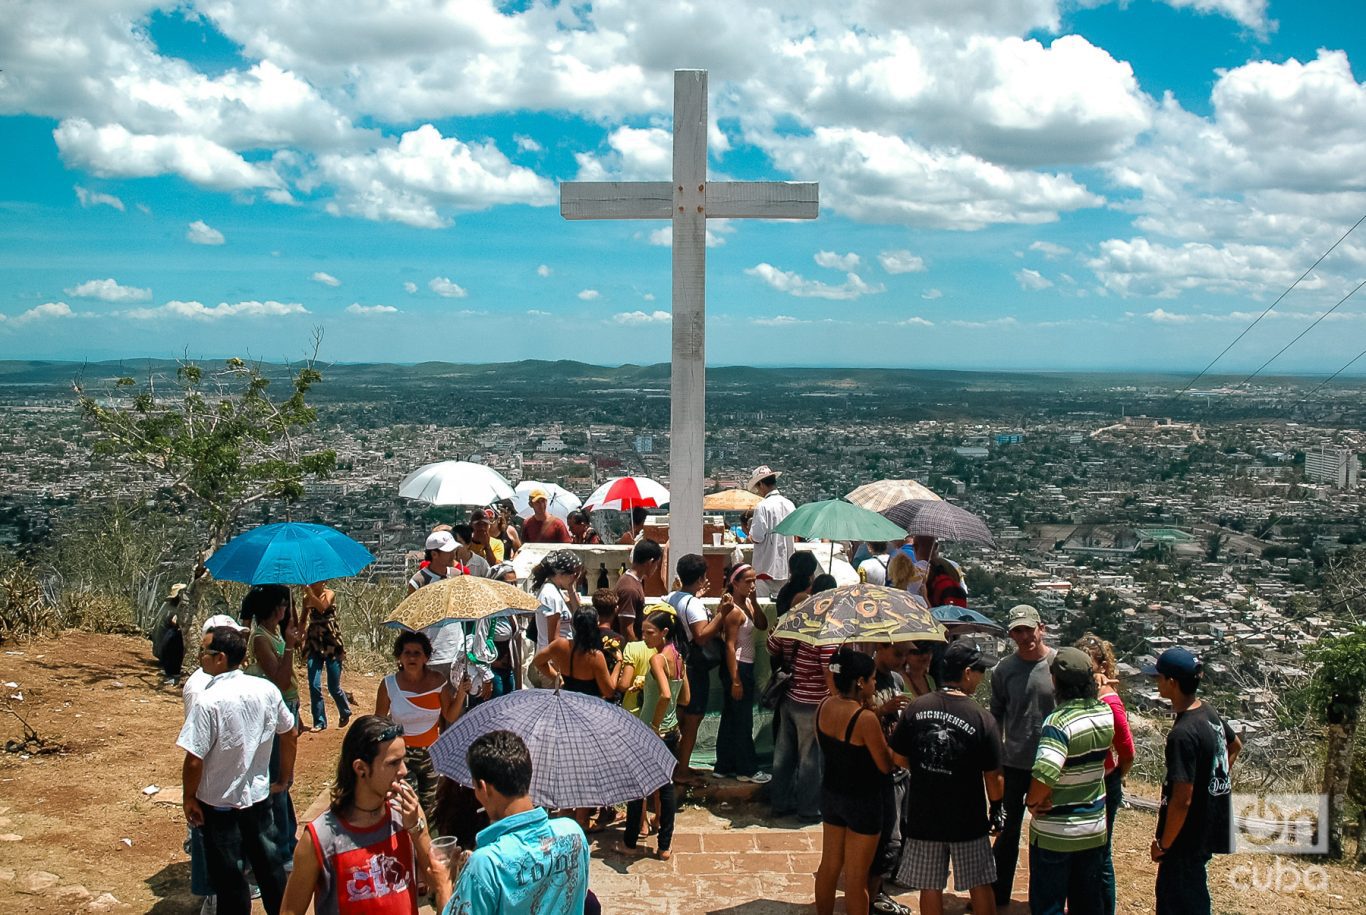  Peregrinación en la Loma de la Cruz, en Holguín. Foto: Kaloian.